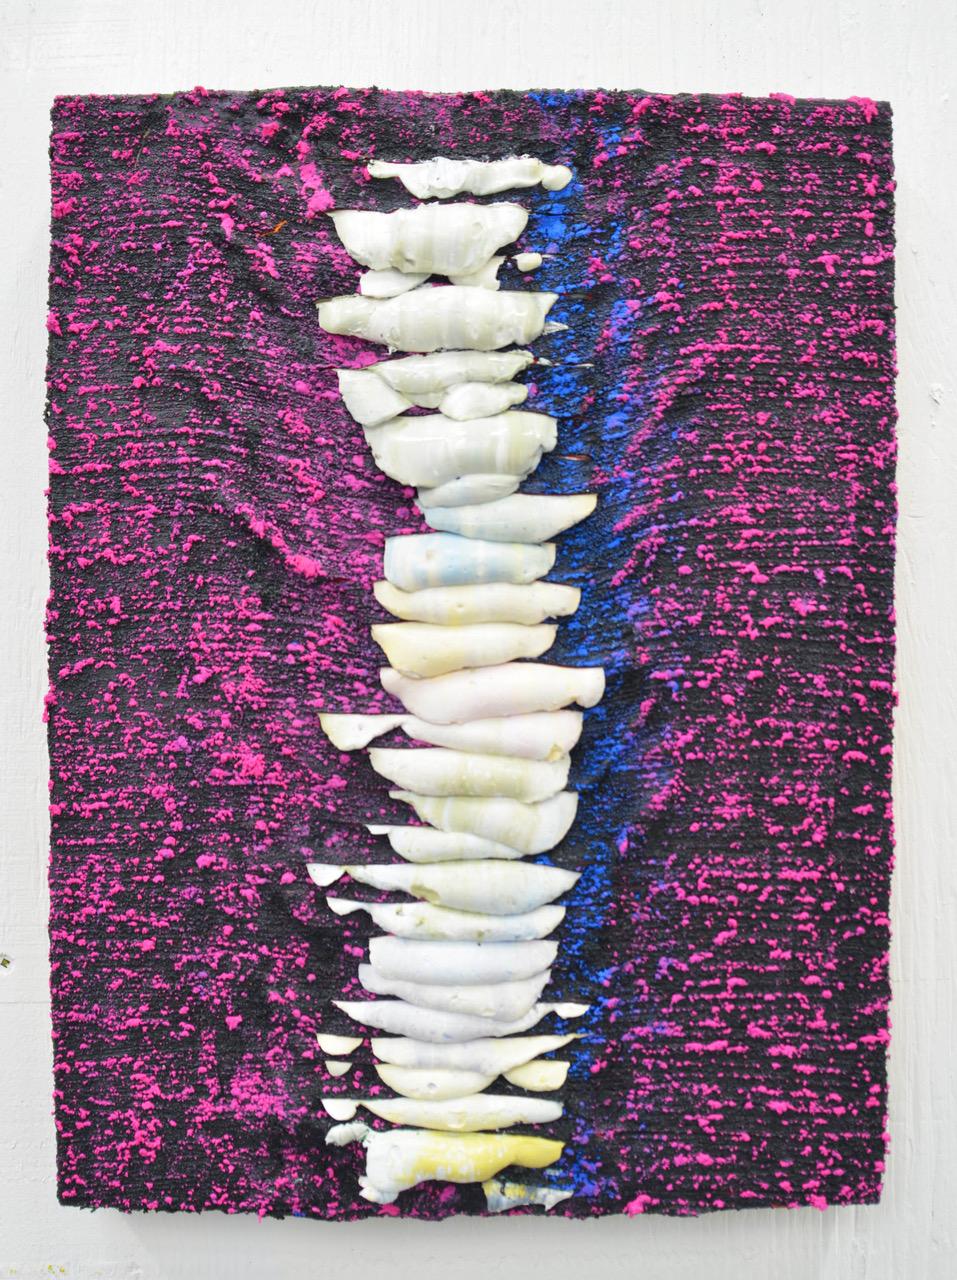 Bemalte Schritte (Lucio Fontana abstrakte zeitgenössische Malerei Impasto-Kunst in Violett)